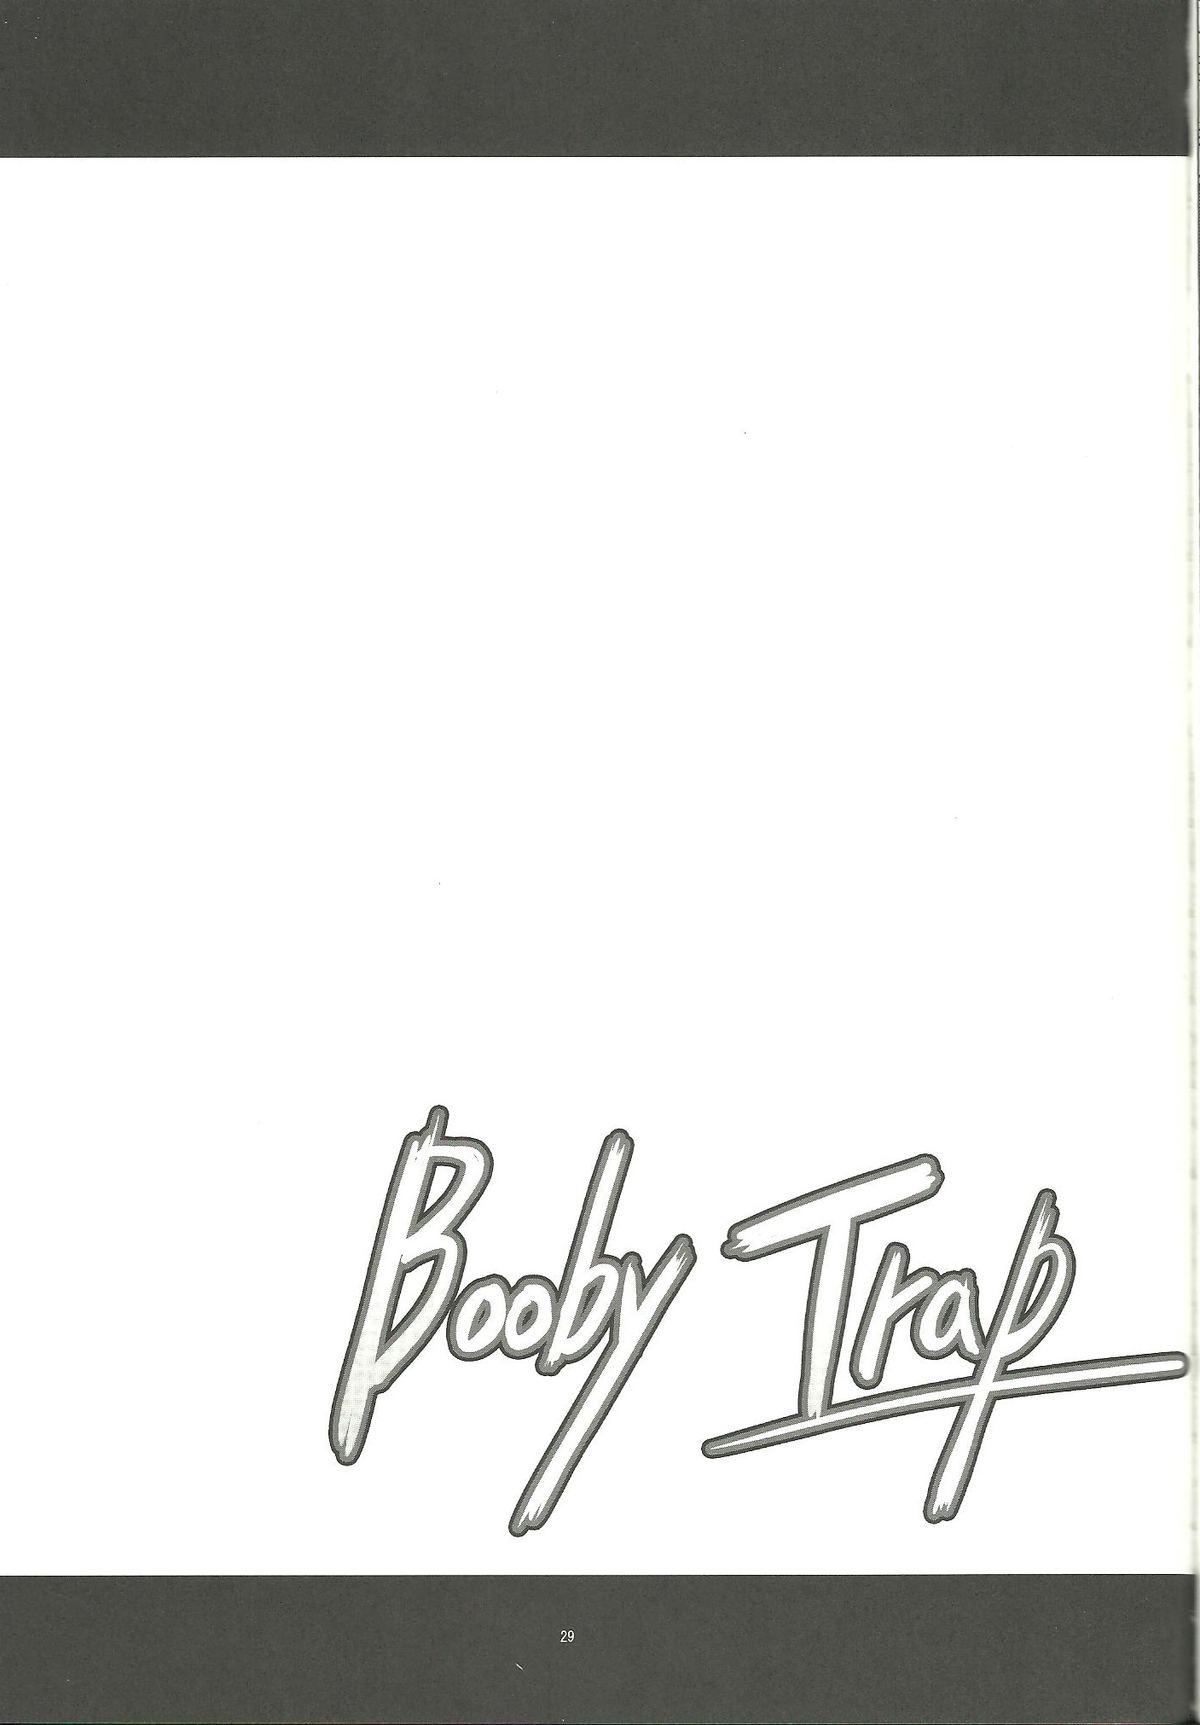 Booby Trap 27